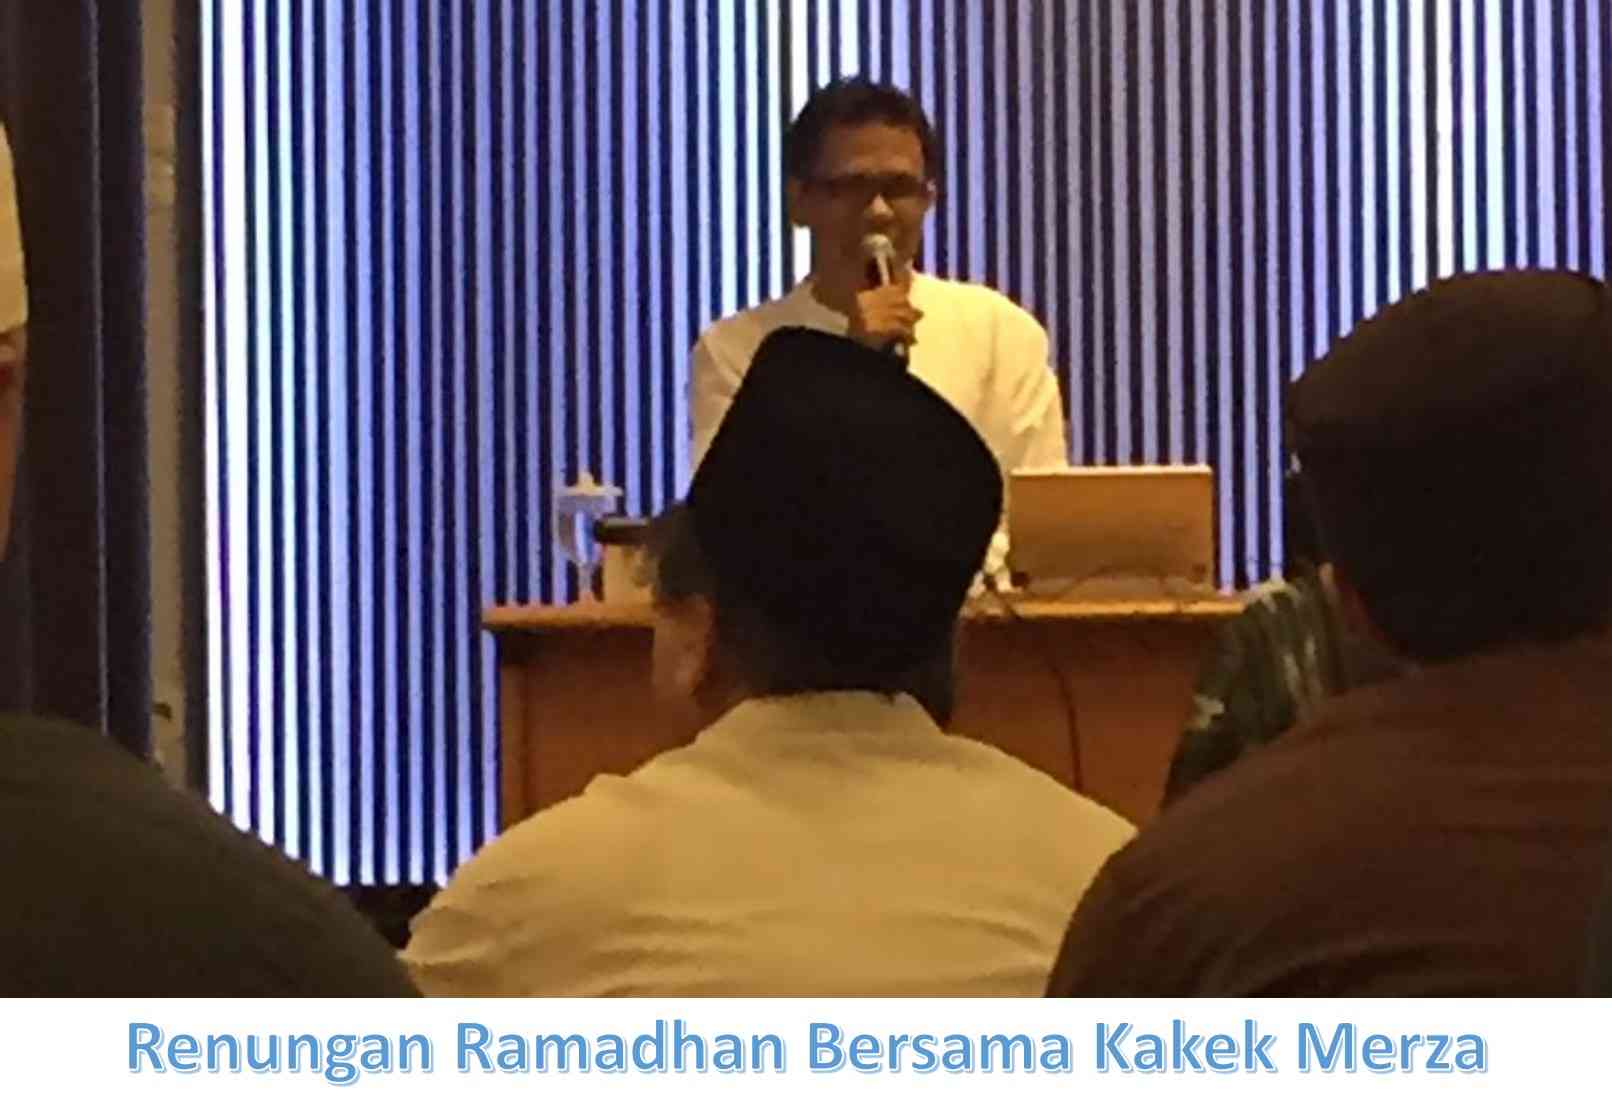 Renungan Ramadhan (13): Meningkatkan Ilmu Sebagai Keutamaan Ramadhan